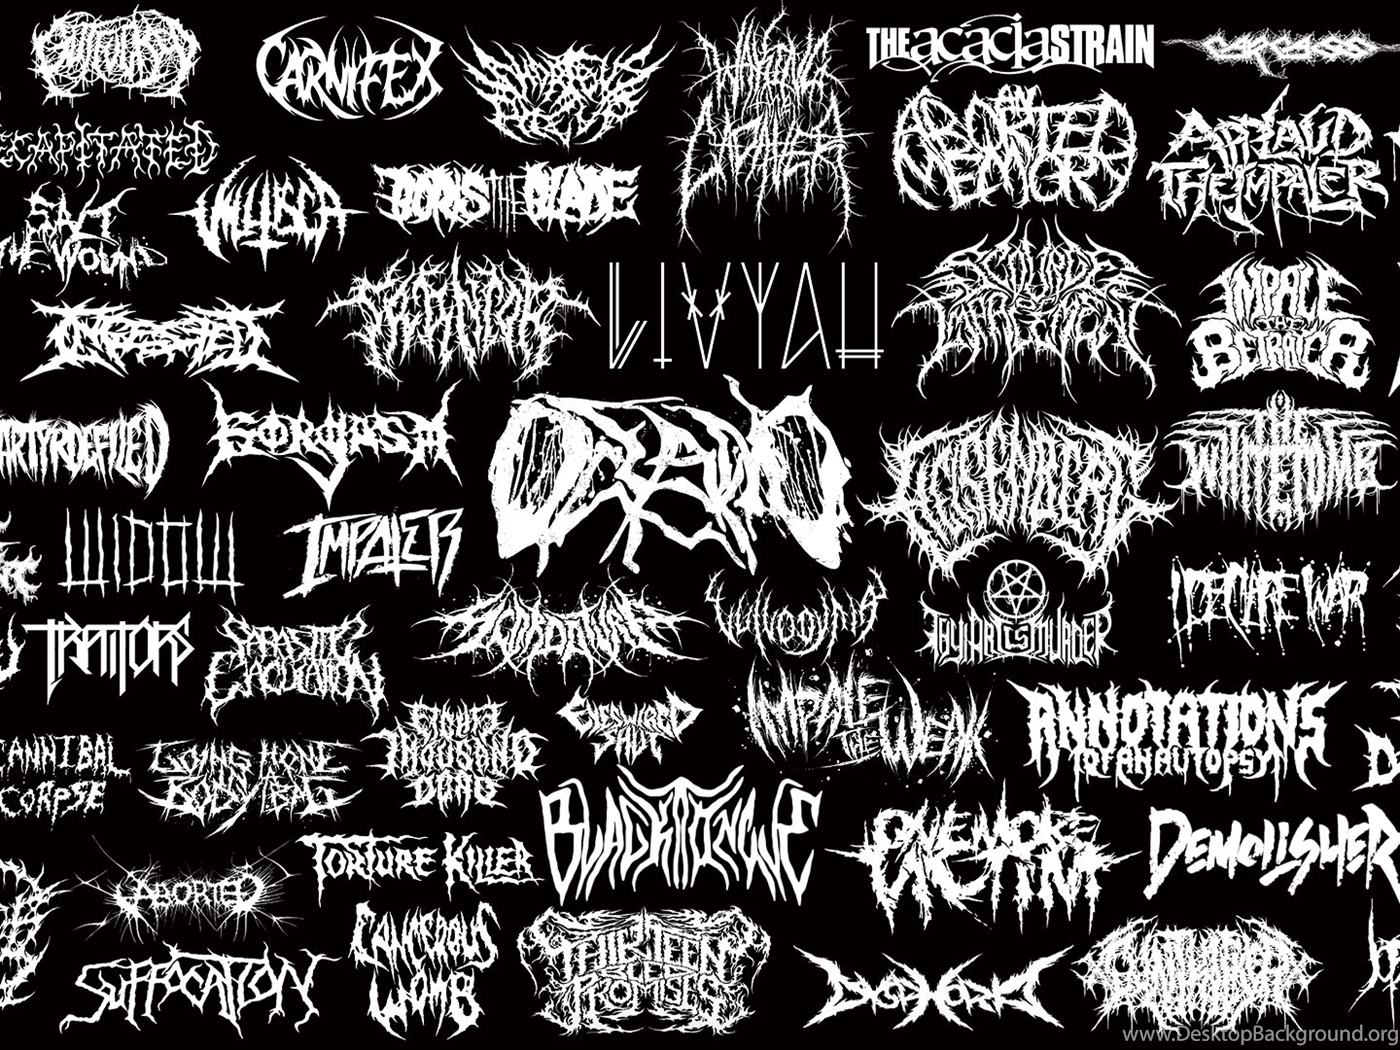 Название дэткор группы. Лого дэткор групп. Названия Deathcore групп. Надписи металл групп. Шрифт металл групп